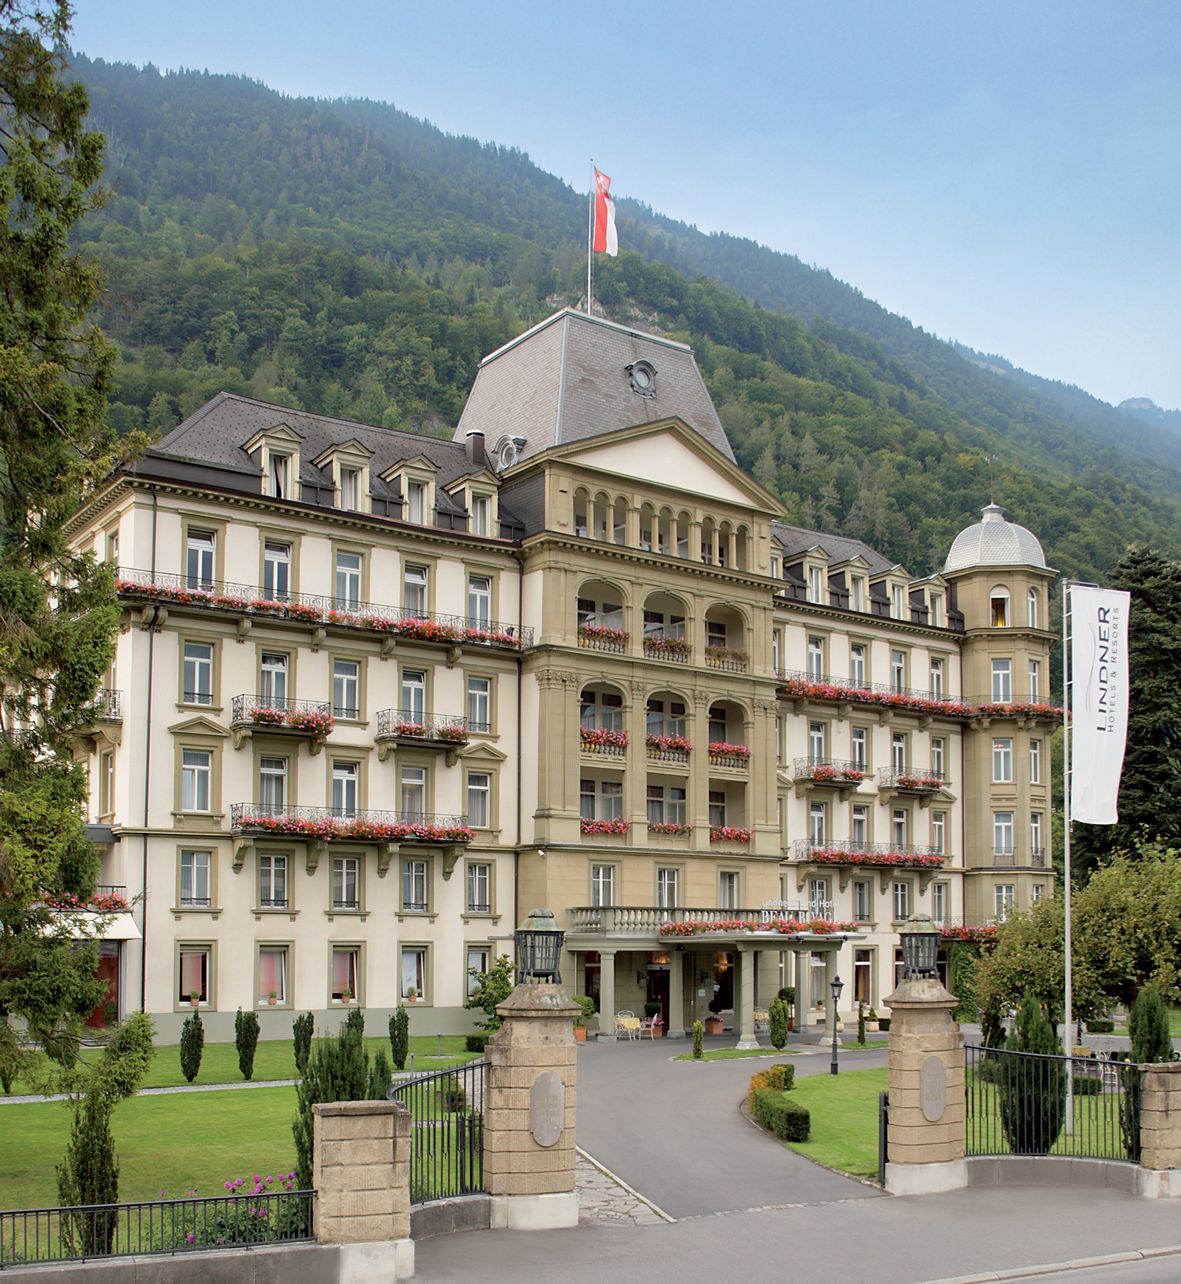 Außenansicht des Lindner Grand Hotel Beau Rivage in Interlaken/Schweiz.
